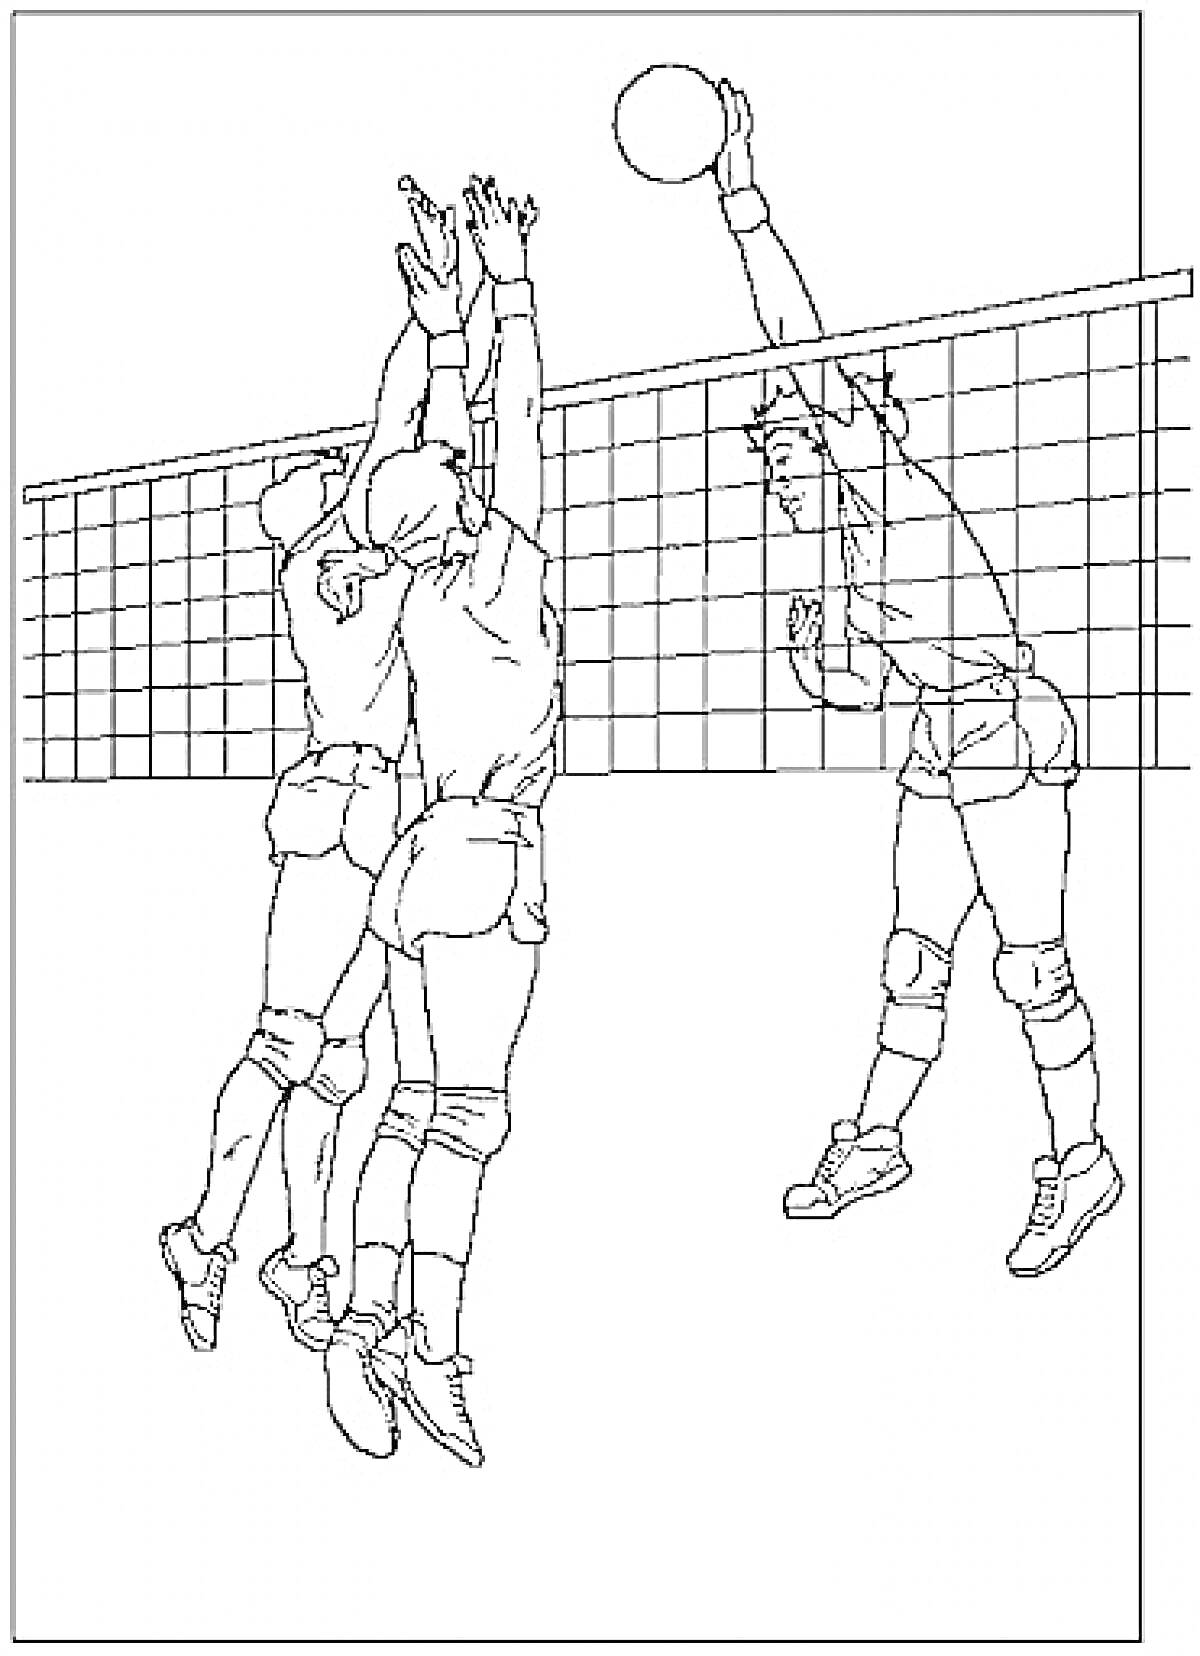 Раскраска Волейболисты, играющие возле сетки, один игрок с левой стороны поднимает руки вверх в прыжке, чтобы заблокировать мяч, в то время как другой игрок справа пытается пробить мяч через сетку.